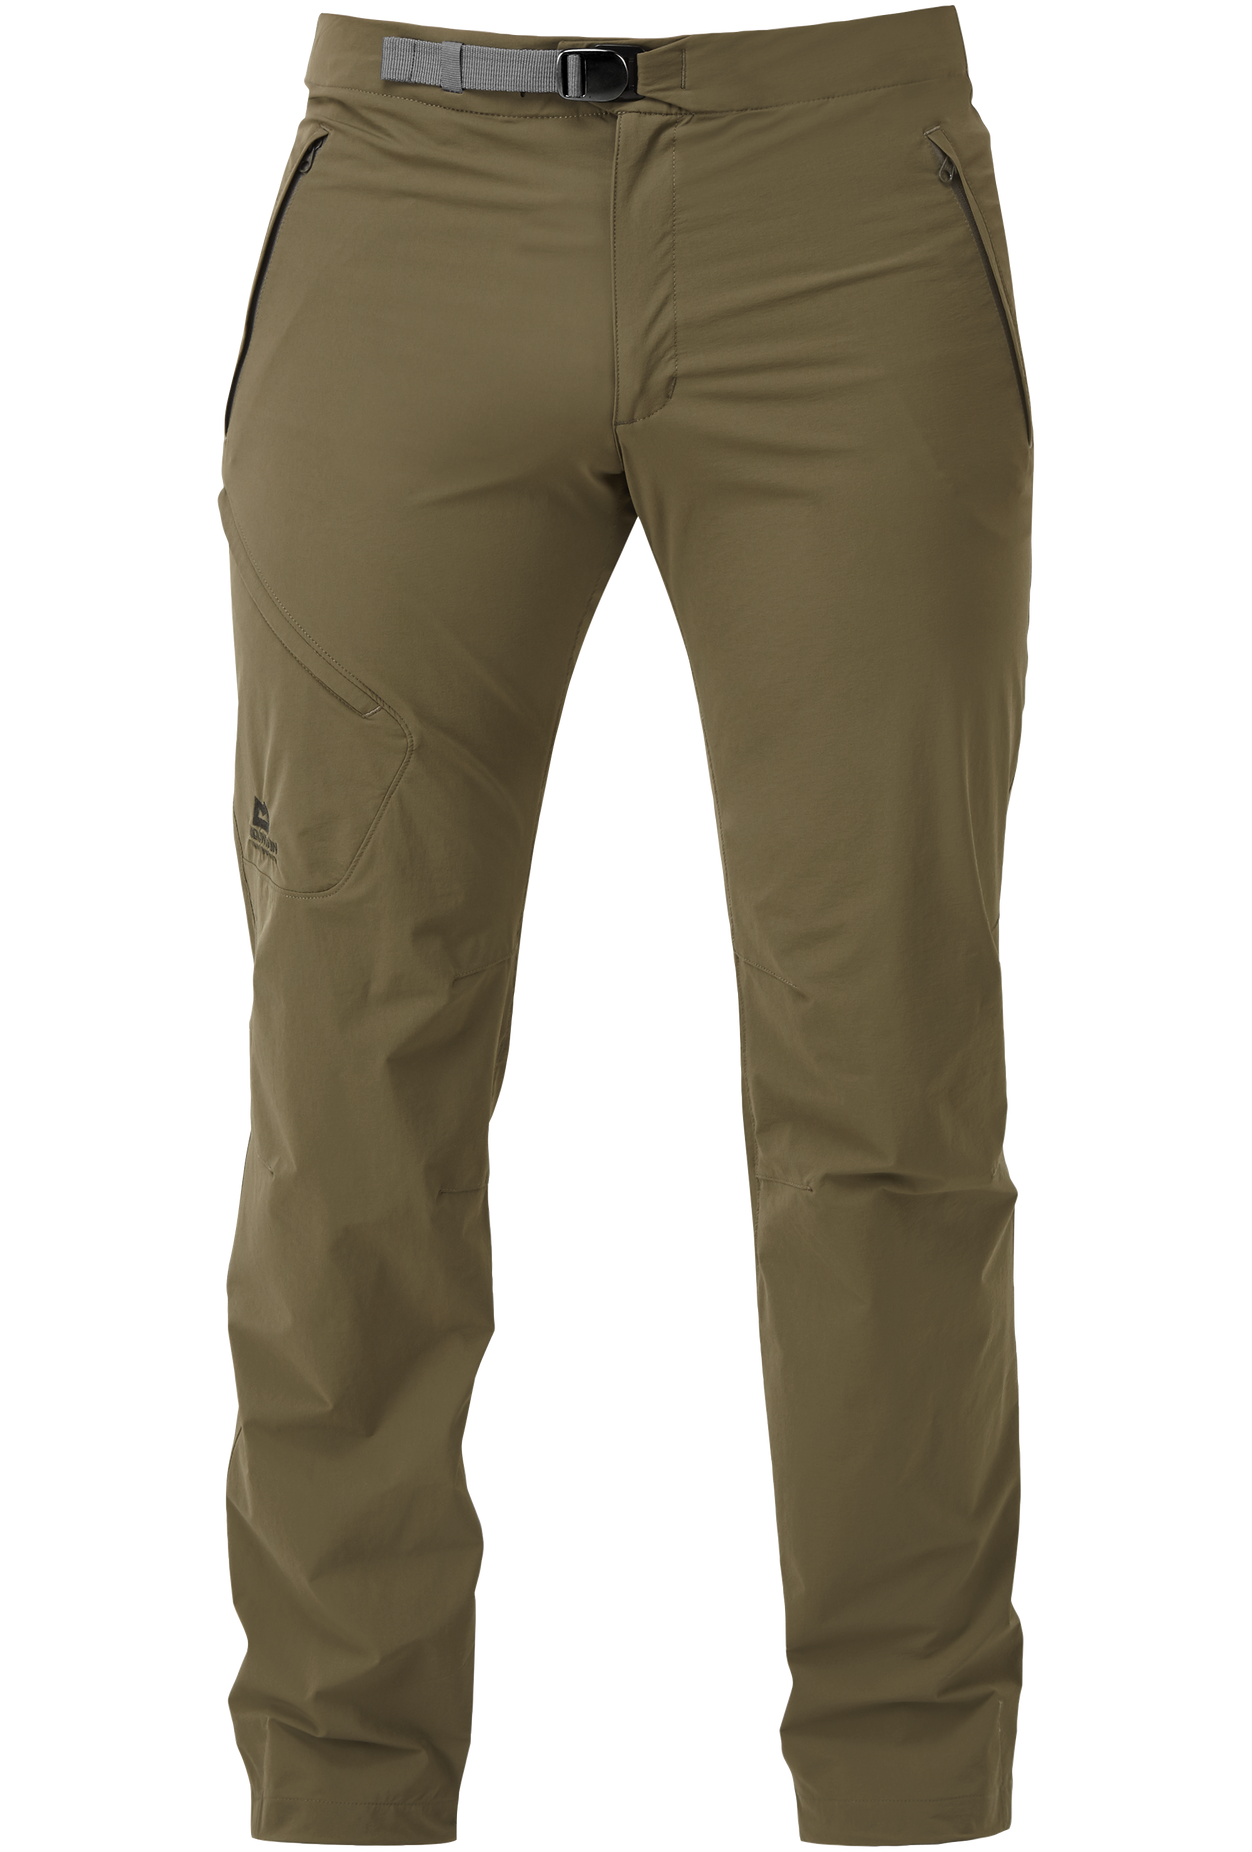 Mountain Equipment pánské softshellové kalhoty Comici Pant - zkrácené Barva: Mudstone, Velikost: 38/XXL